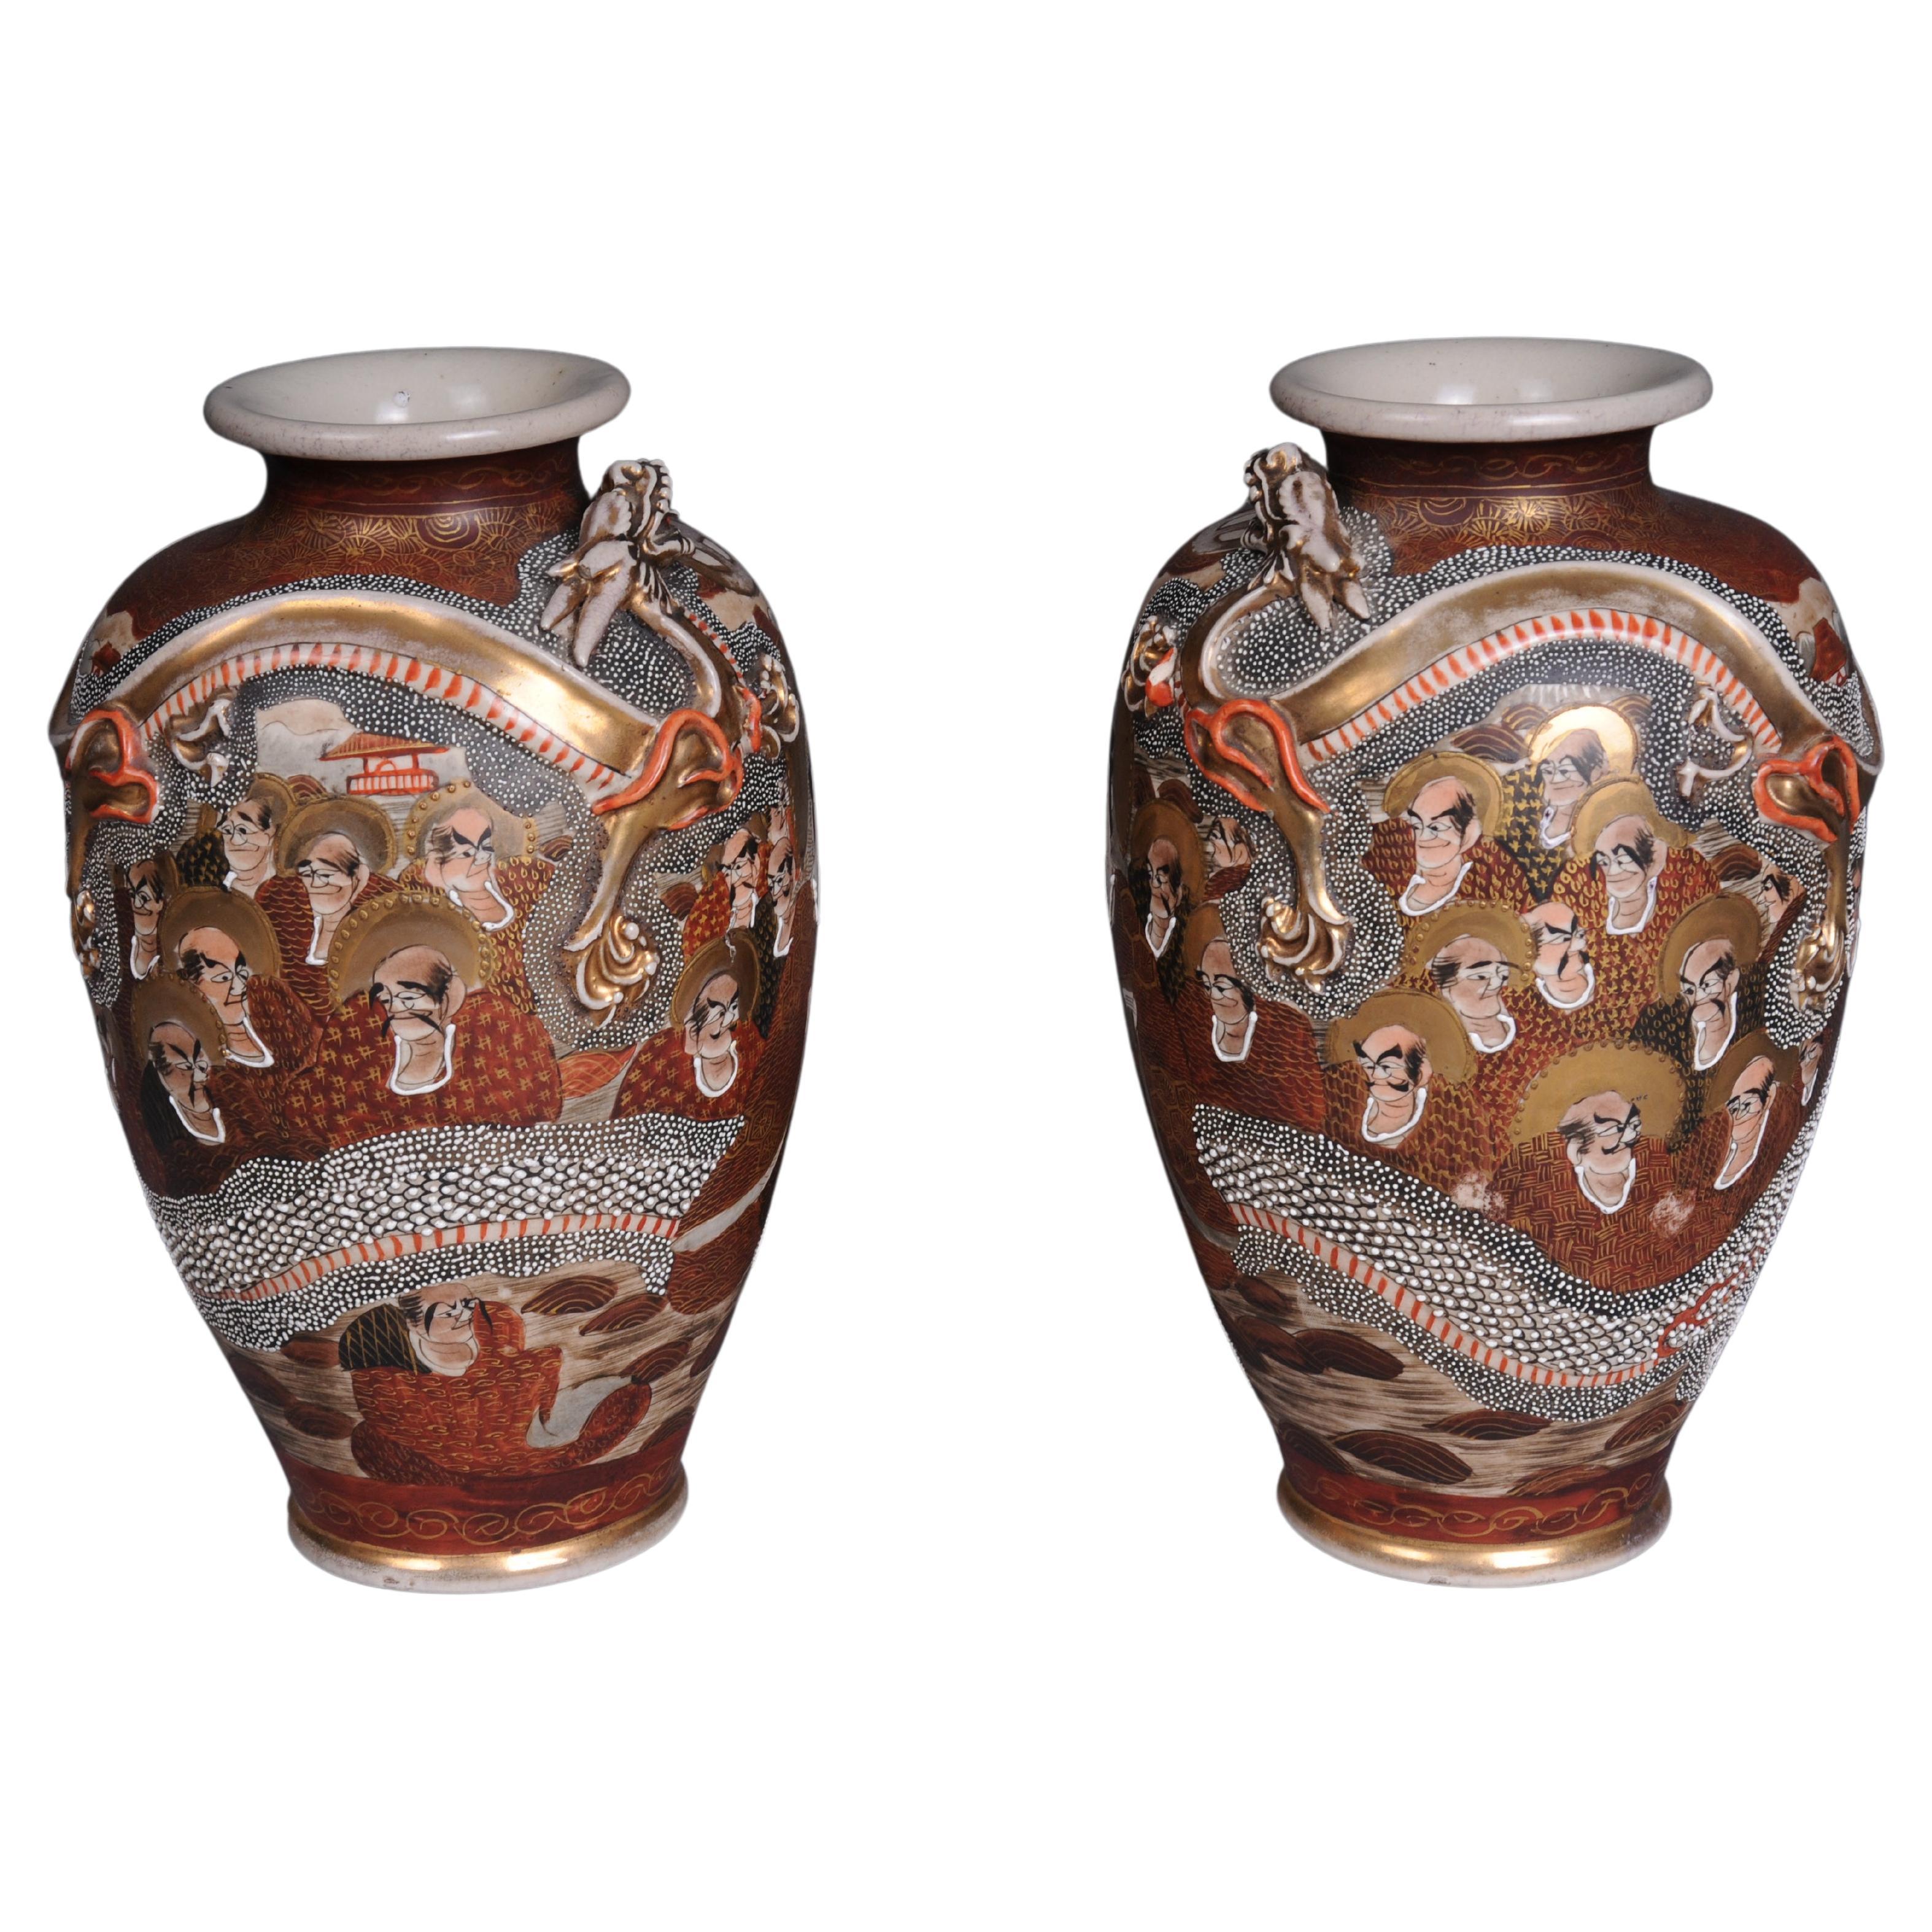 Paire (2) de vases japonais Satsuma, Choshuzan, poterie japonaise Satsuma, période Meiji